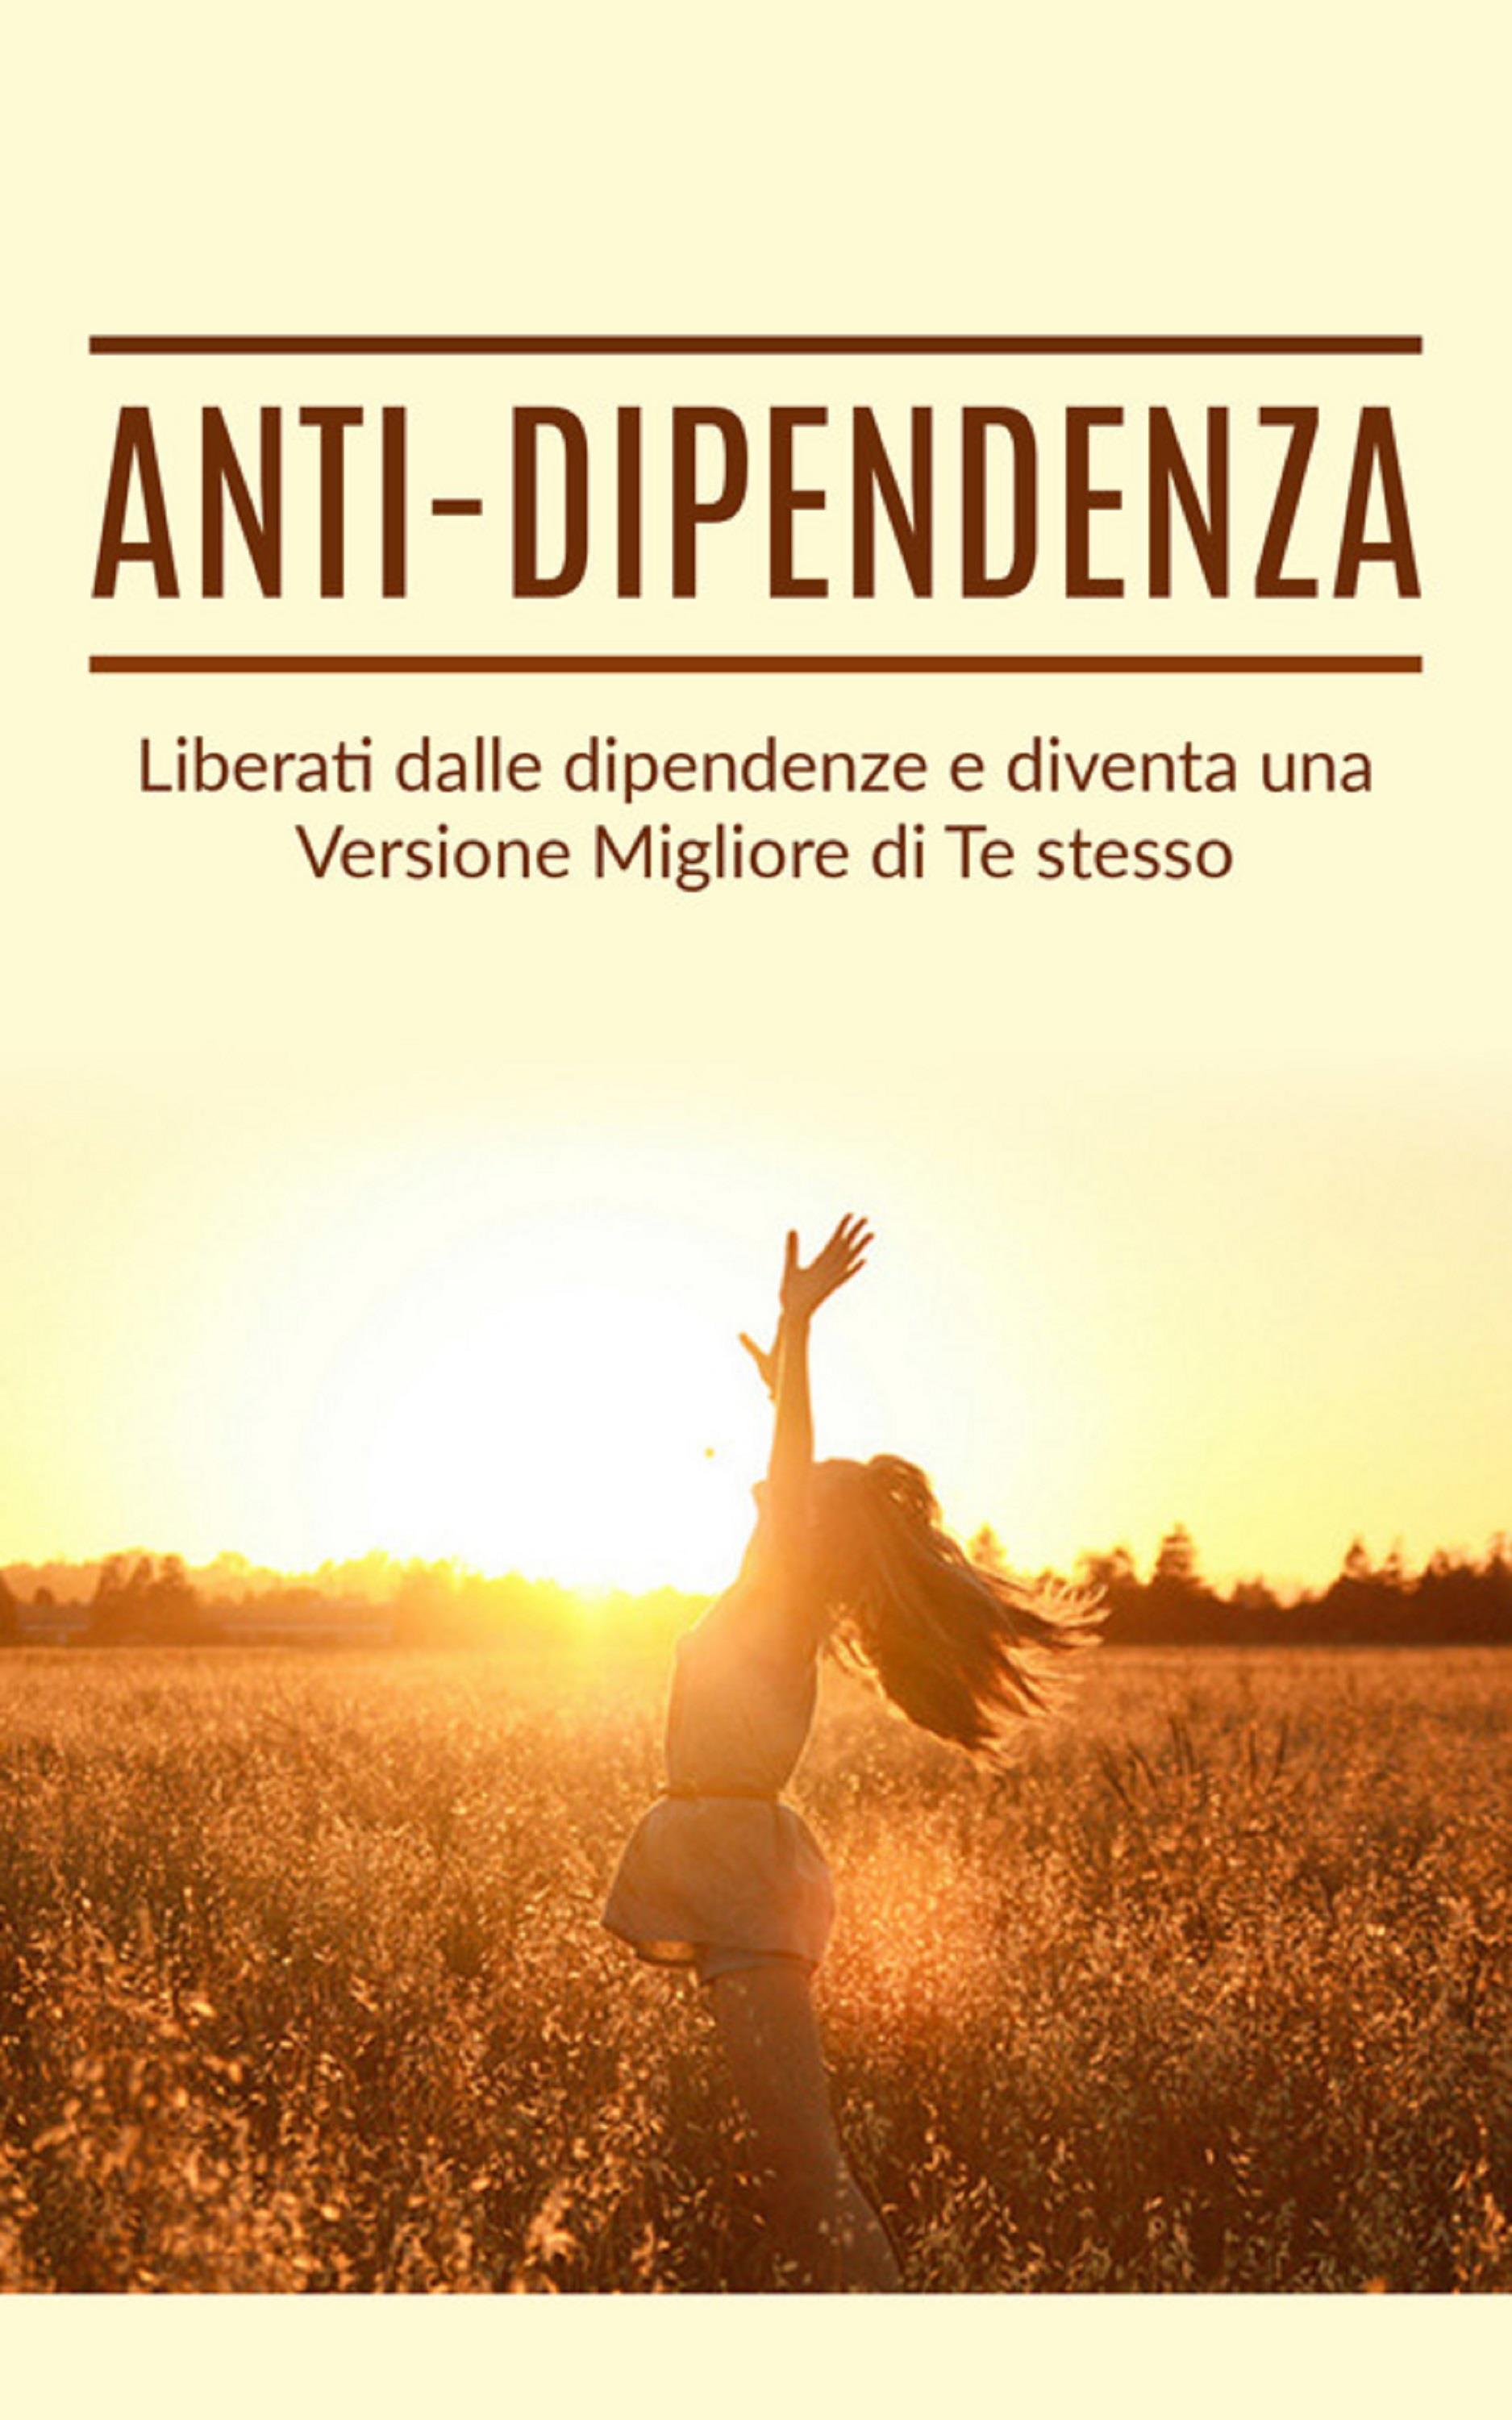 Anti dipendenza (tradotto)